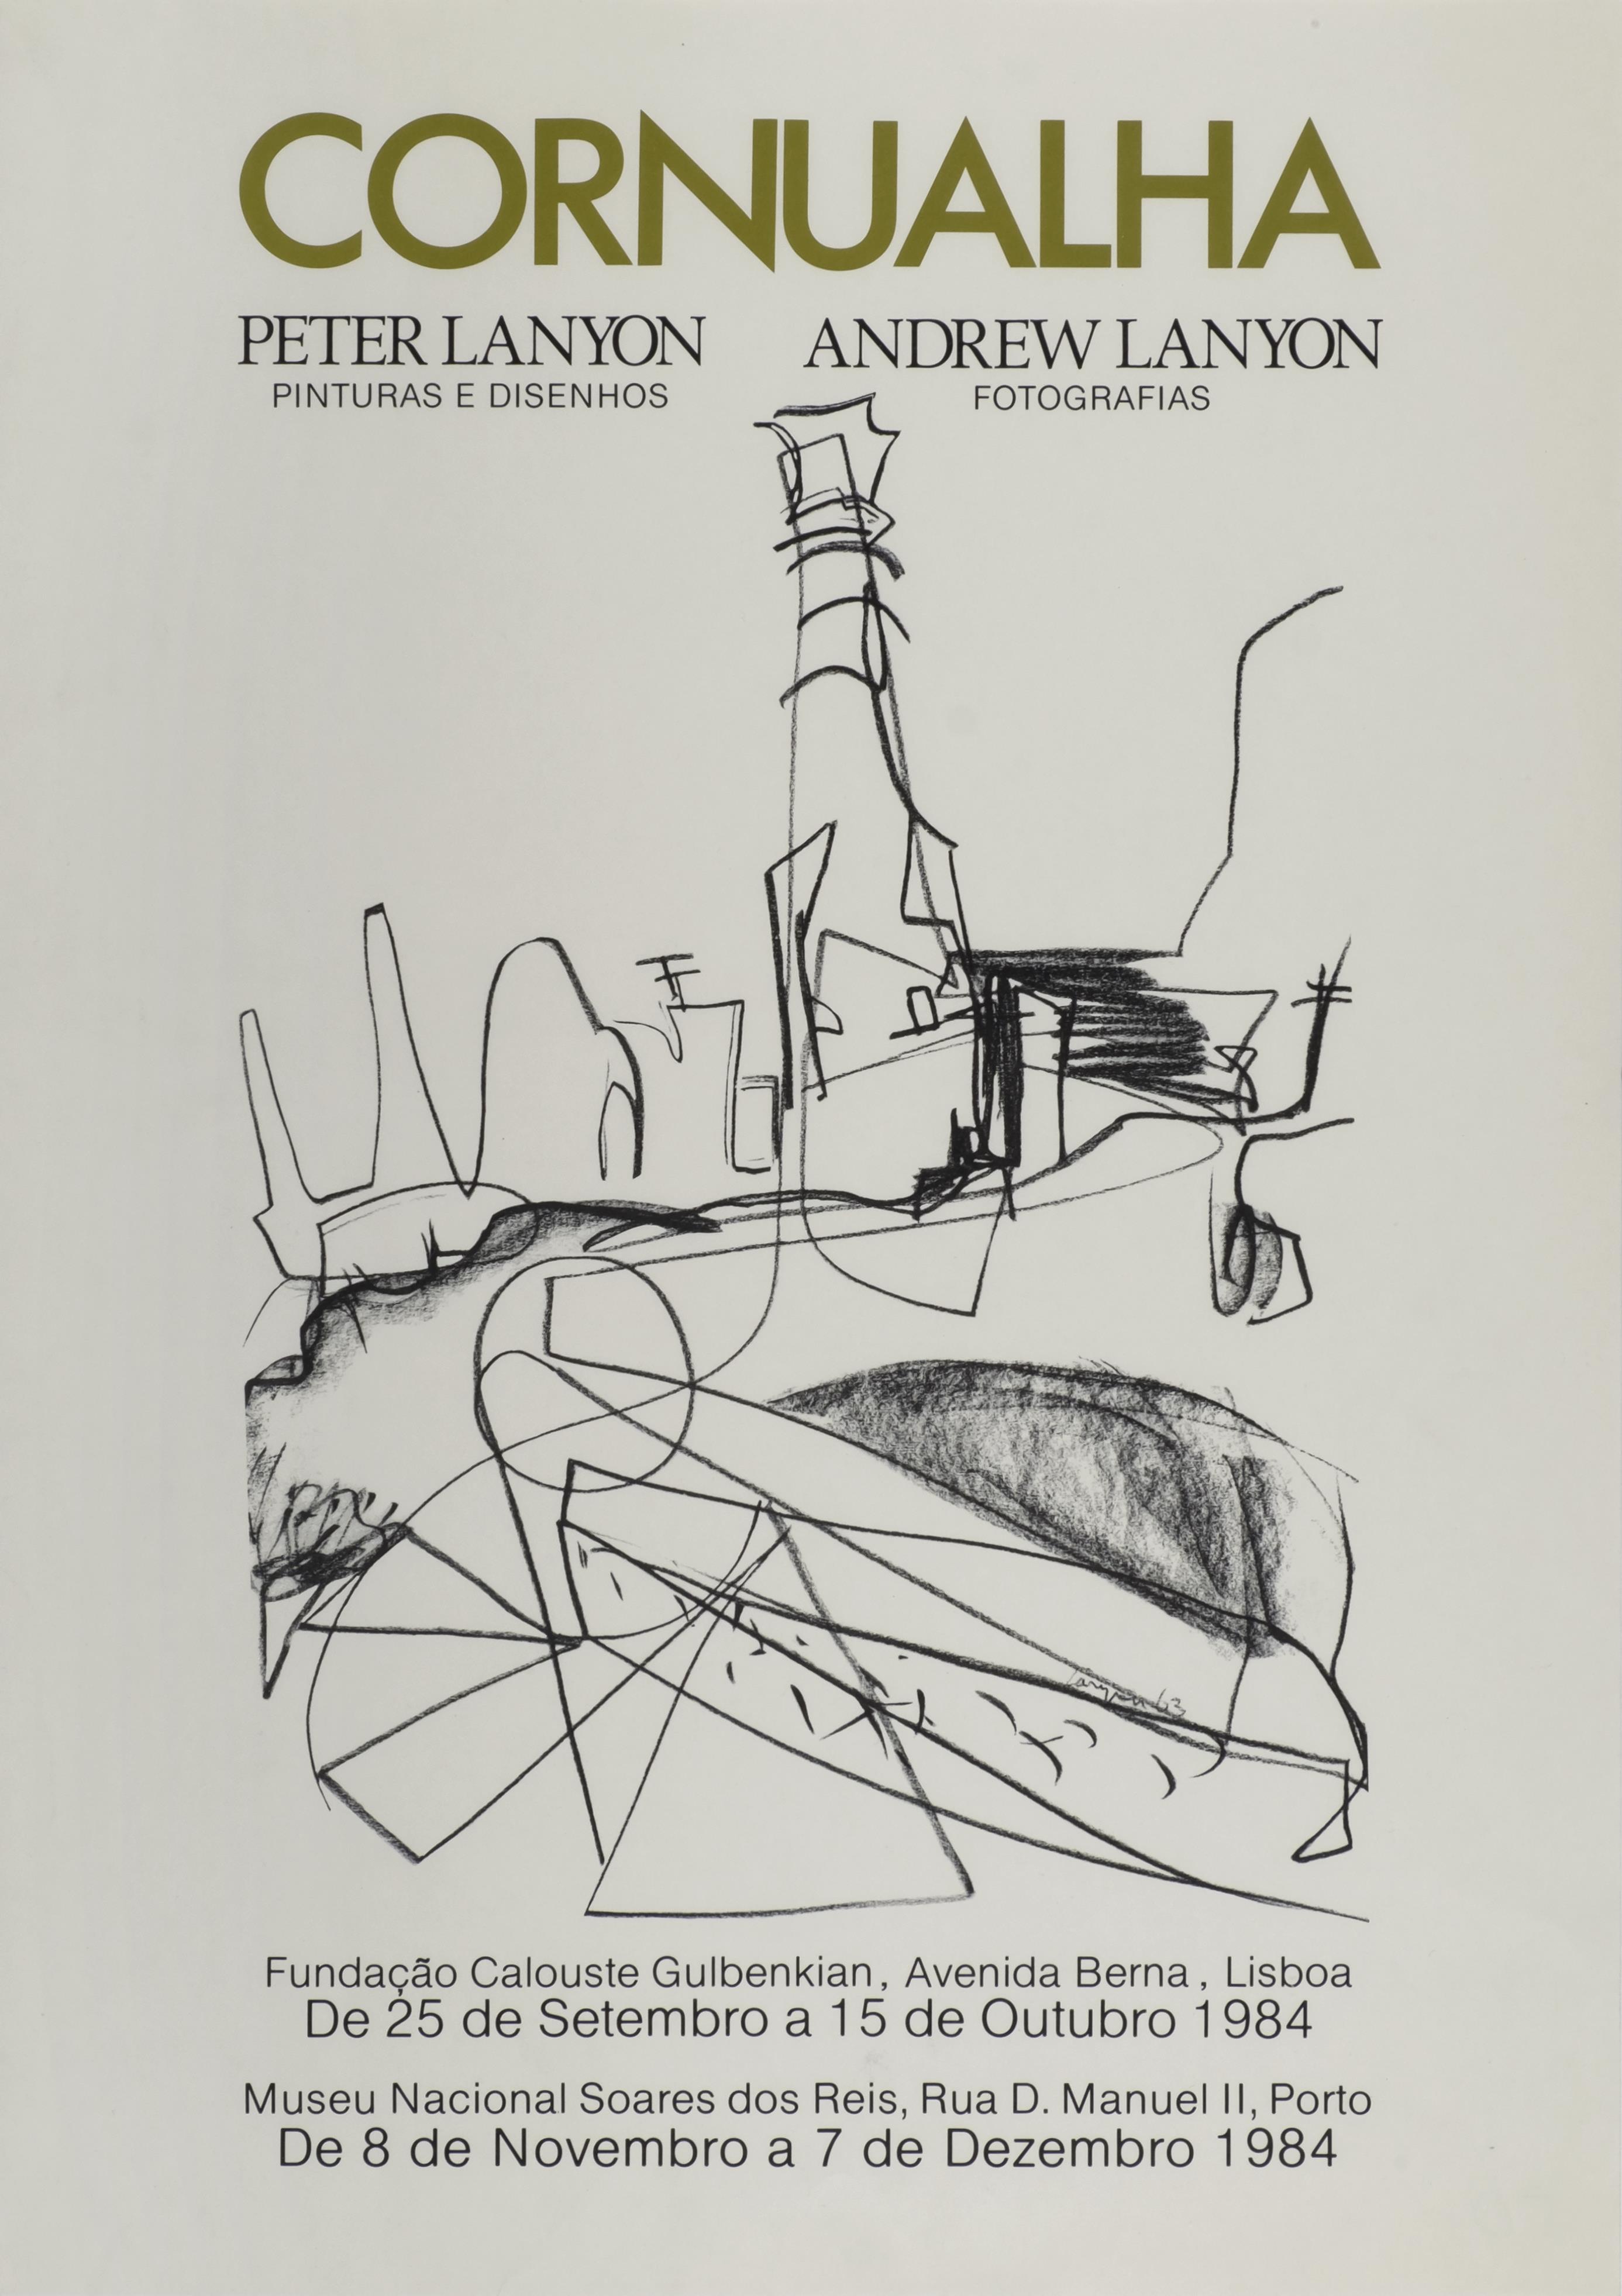 Cornualha. Pintura e Desenho. Peter Lanyon, Andrew Lanyon. Fotografias